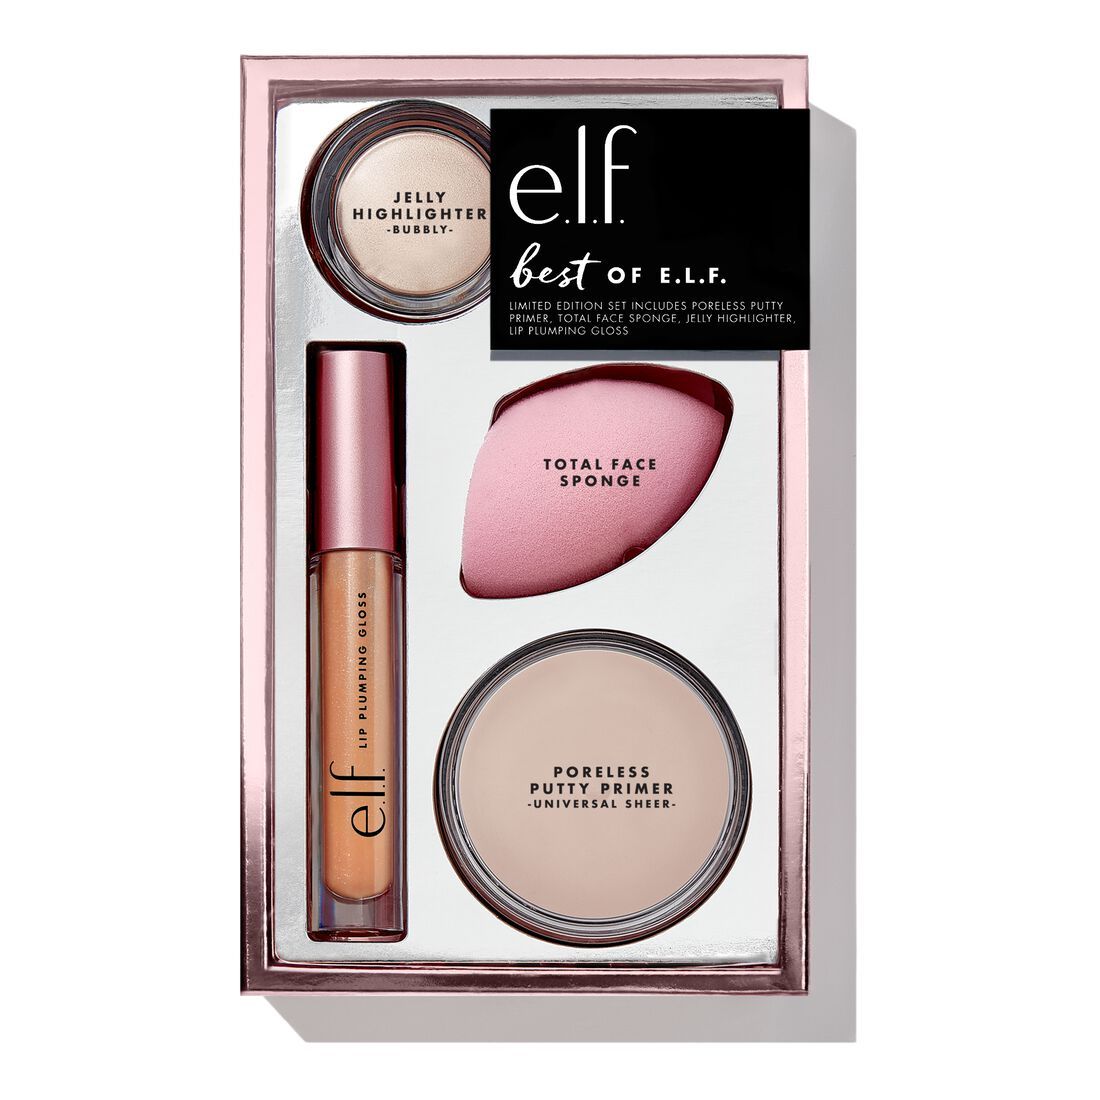 Best of e.l.f. kit | e.l.f. cosmetics (US)